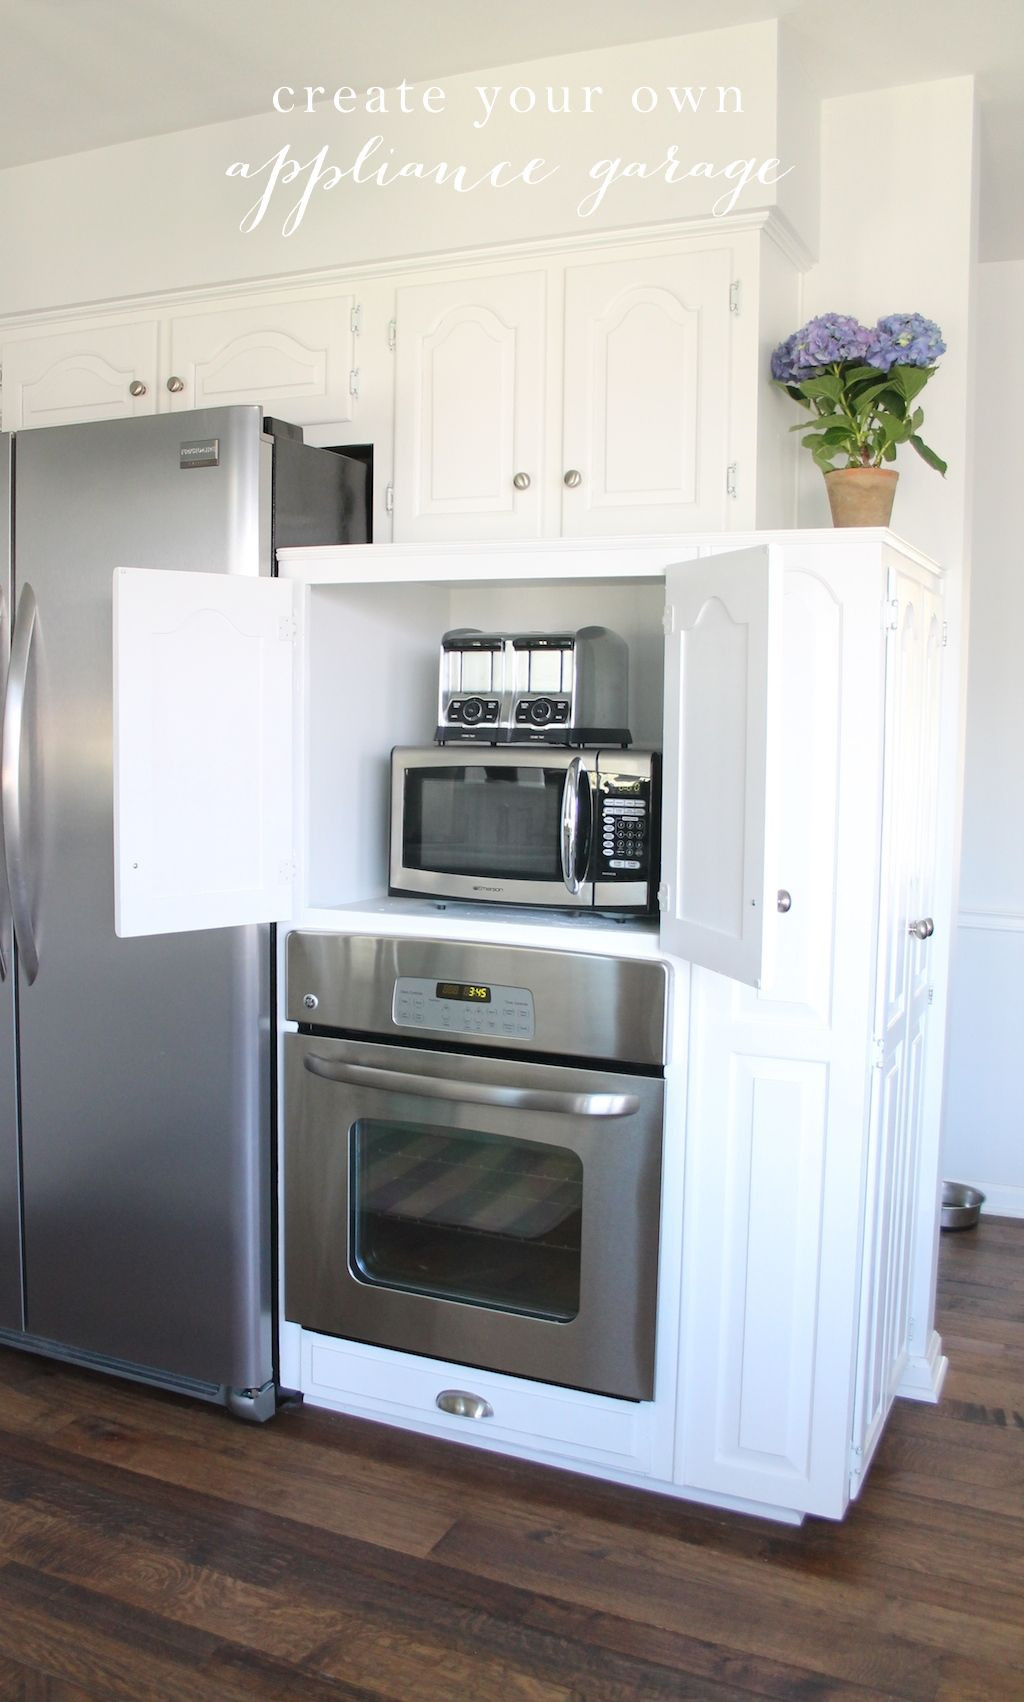 Kitchen Appliances Storage Cabinet
 Hide your kitchen appliances & maximize storage with this